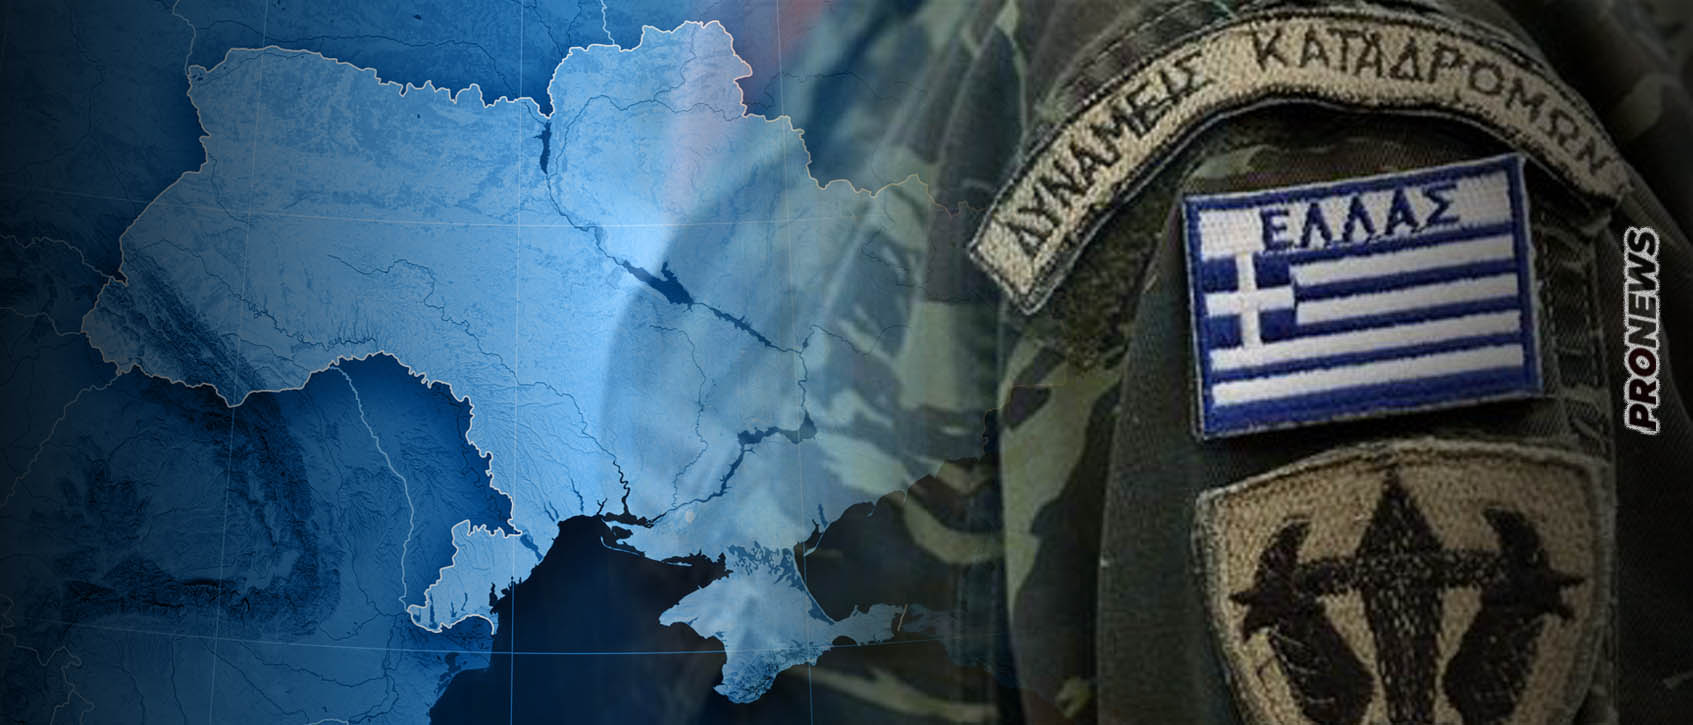 Και ελληνική εμπλοκή στην σύρραξη της Ουκρανίας με αποστολή στρατιωτικής μονάδας αν επέμβουν οι χώρες του ΝΑΤΟ που «βιάζονται»